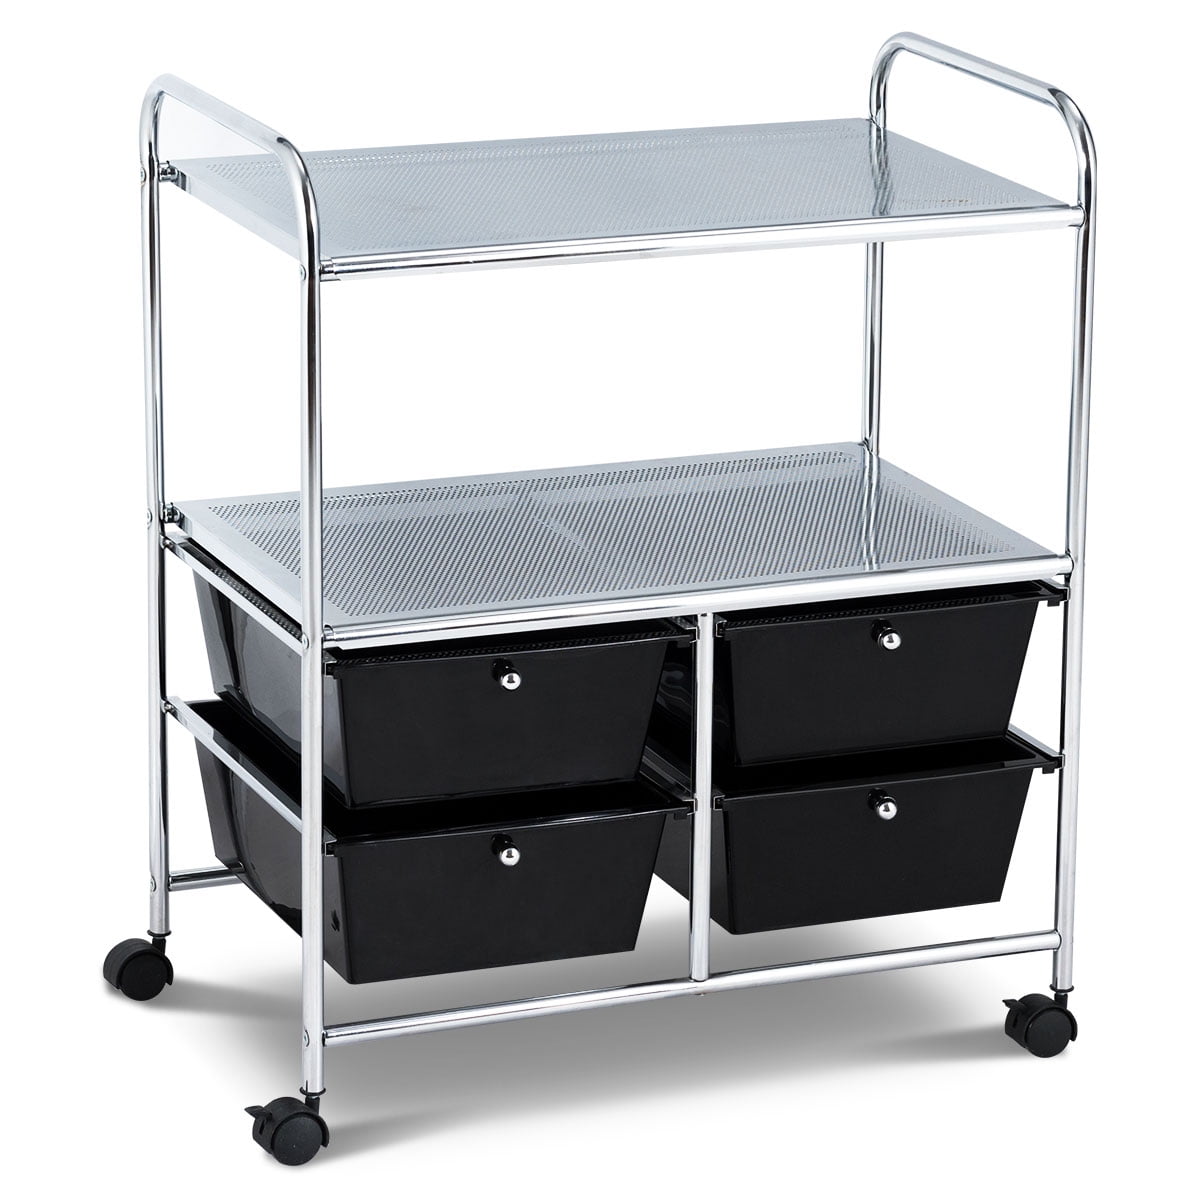 Details about   Utility Cart Trolley Organizer Storage 2Shelf Tier Wagon Rolling Salon Spa Y301C 